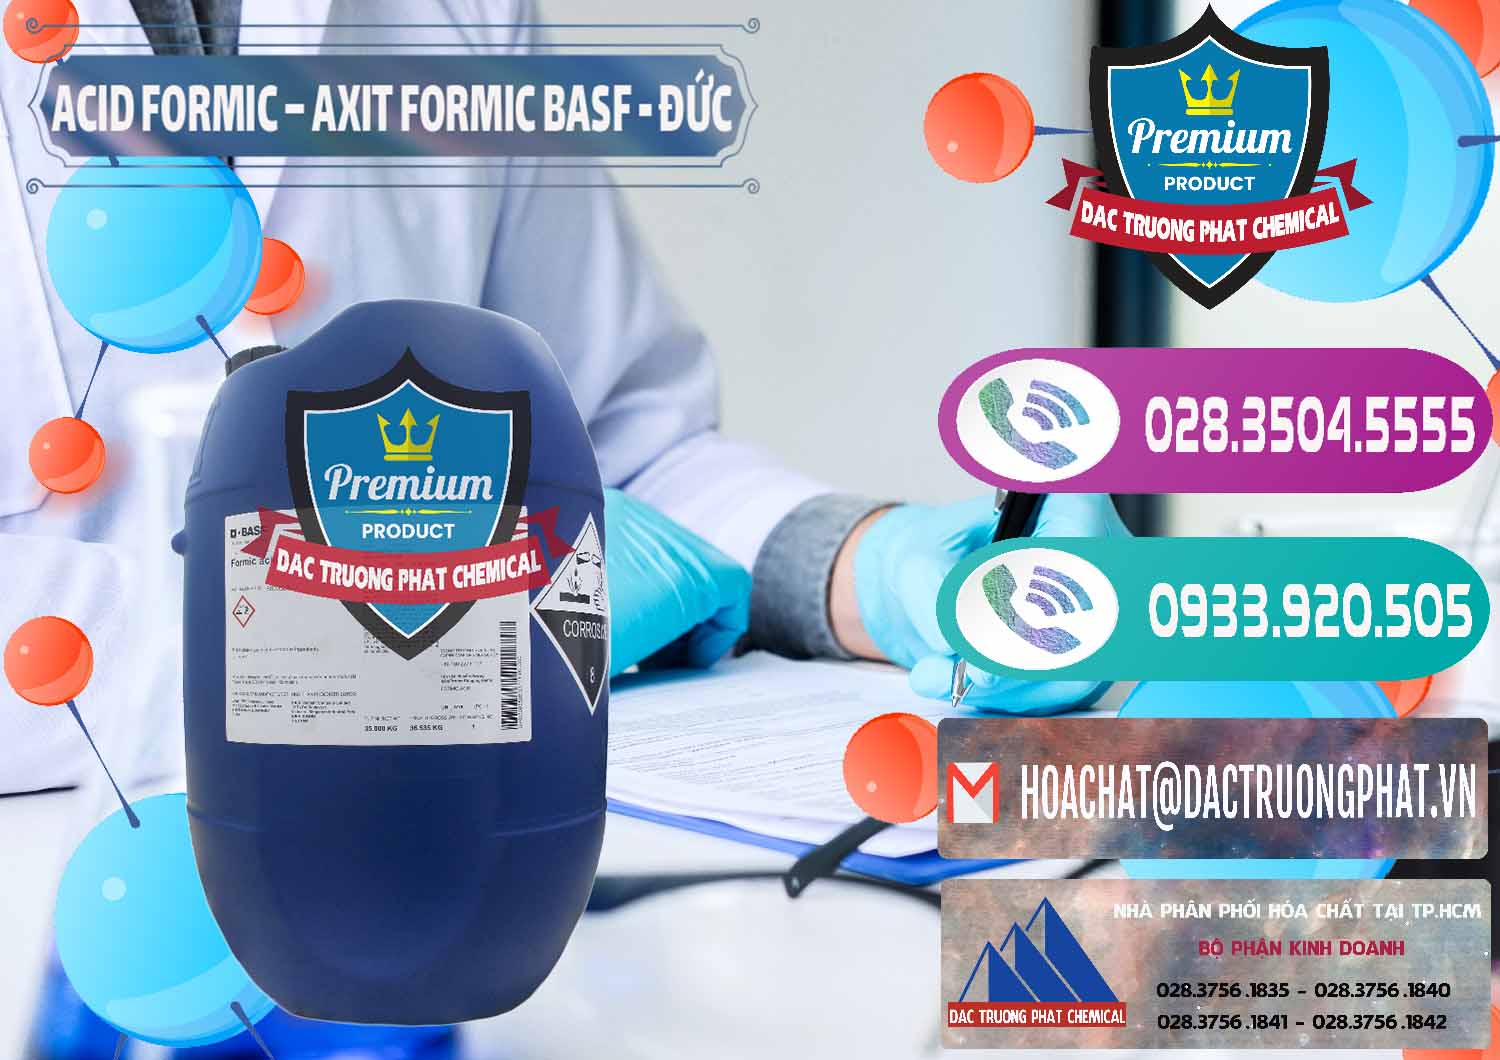 Cty cung cấp & bán Acid Formic - Axit Formic BASF Đức Germany - 0028 - Cty chuyên kinh doanh - cung cấp hóa chất tại TP.HCM - hoachatxulynuoc.com